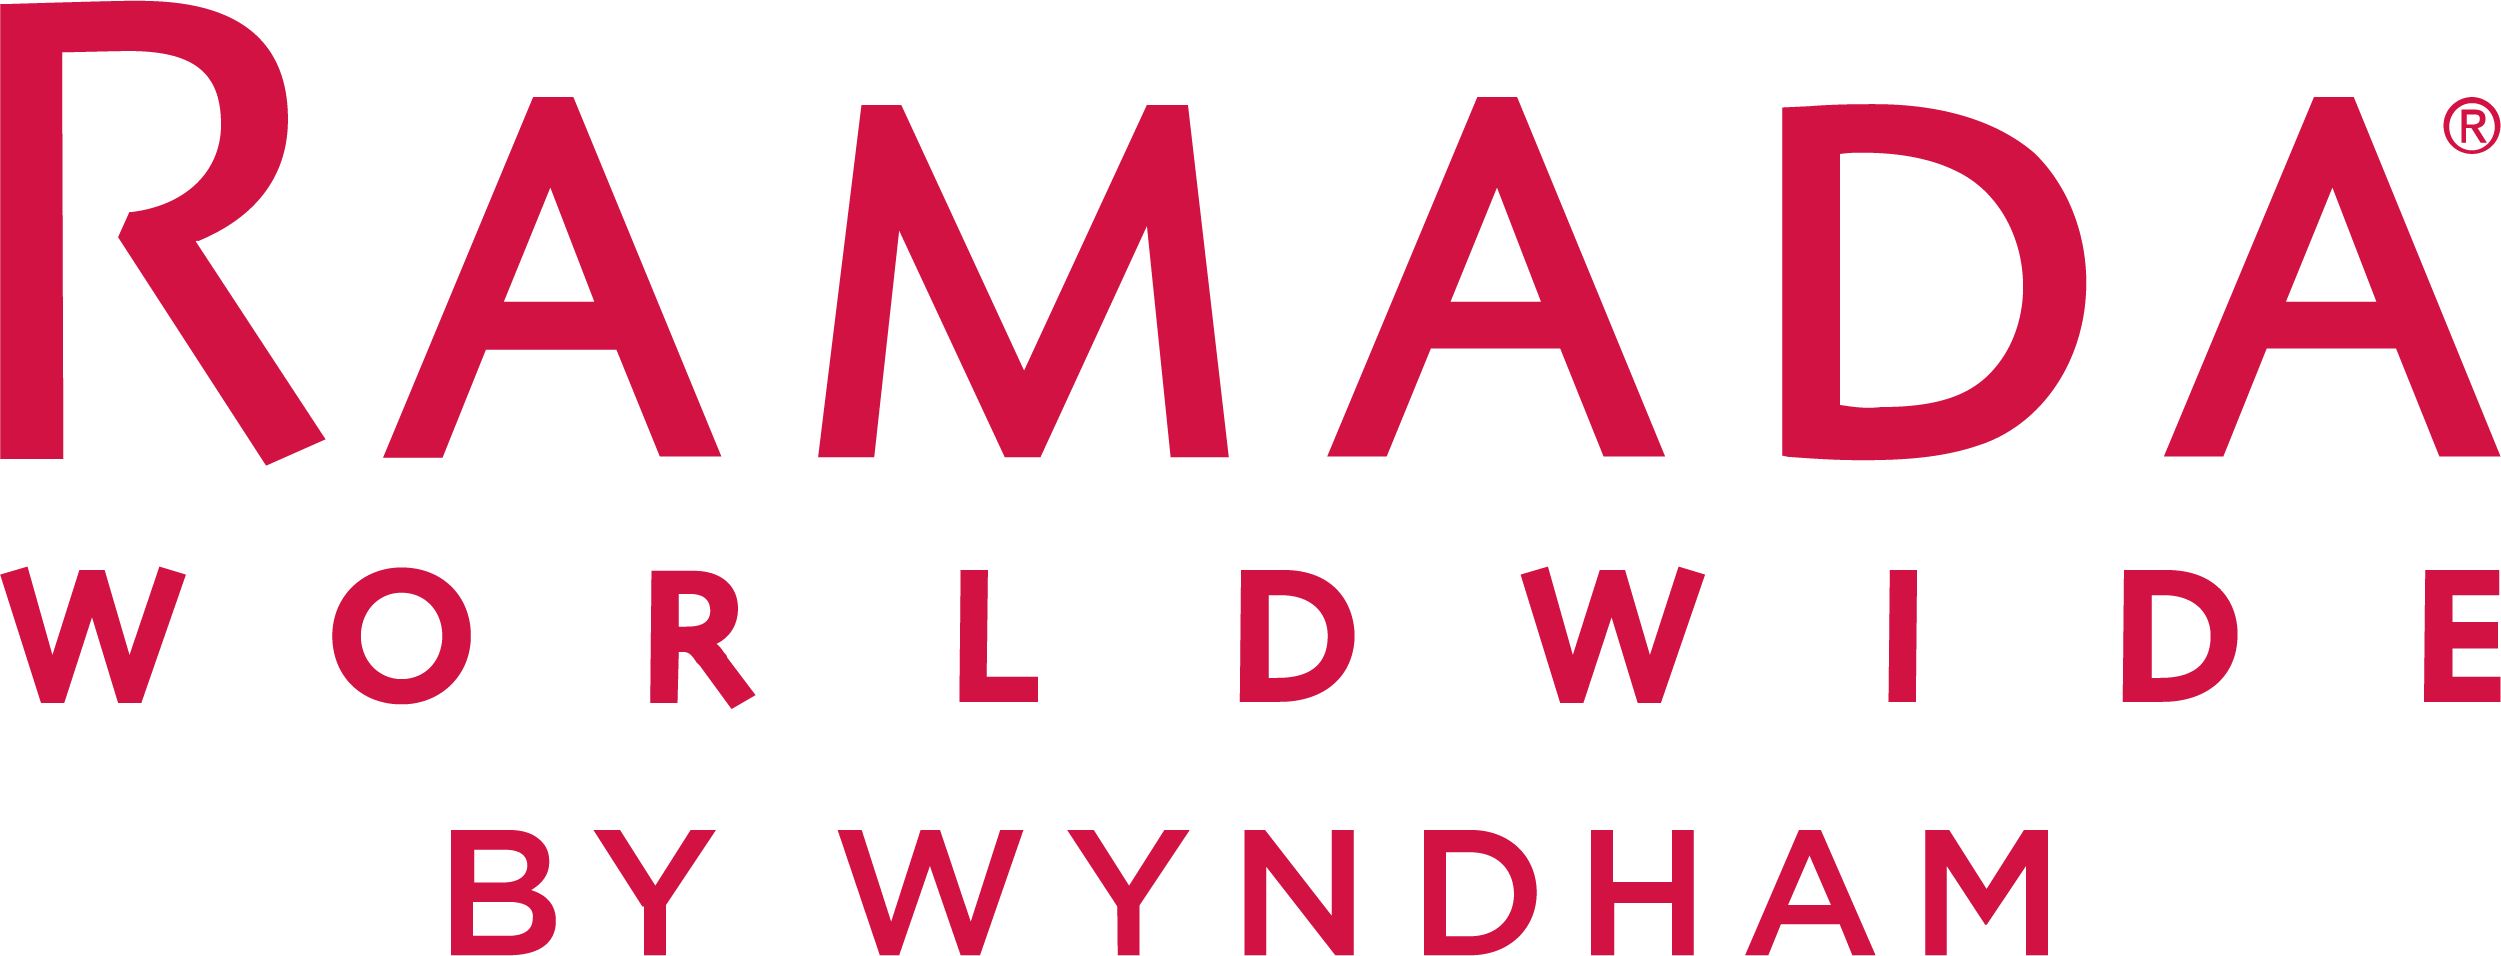 ramada-worldwide-by-wyndham-vector-logo